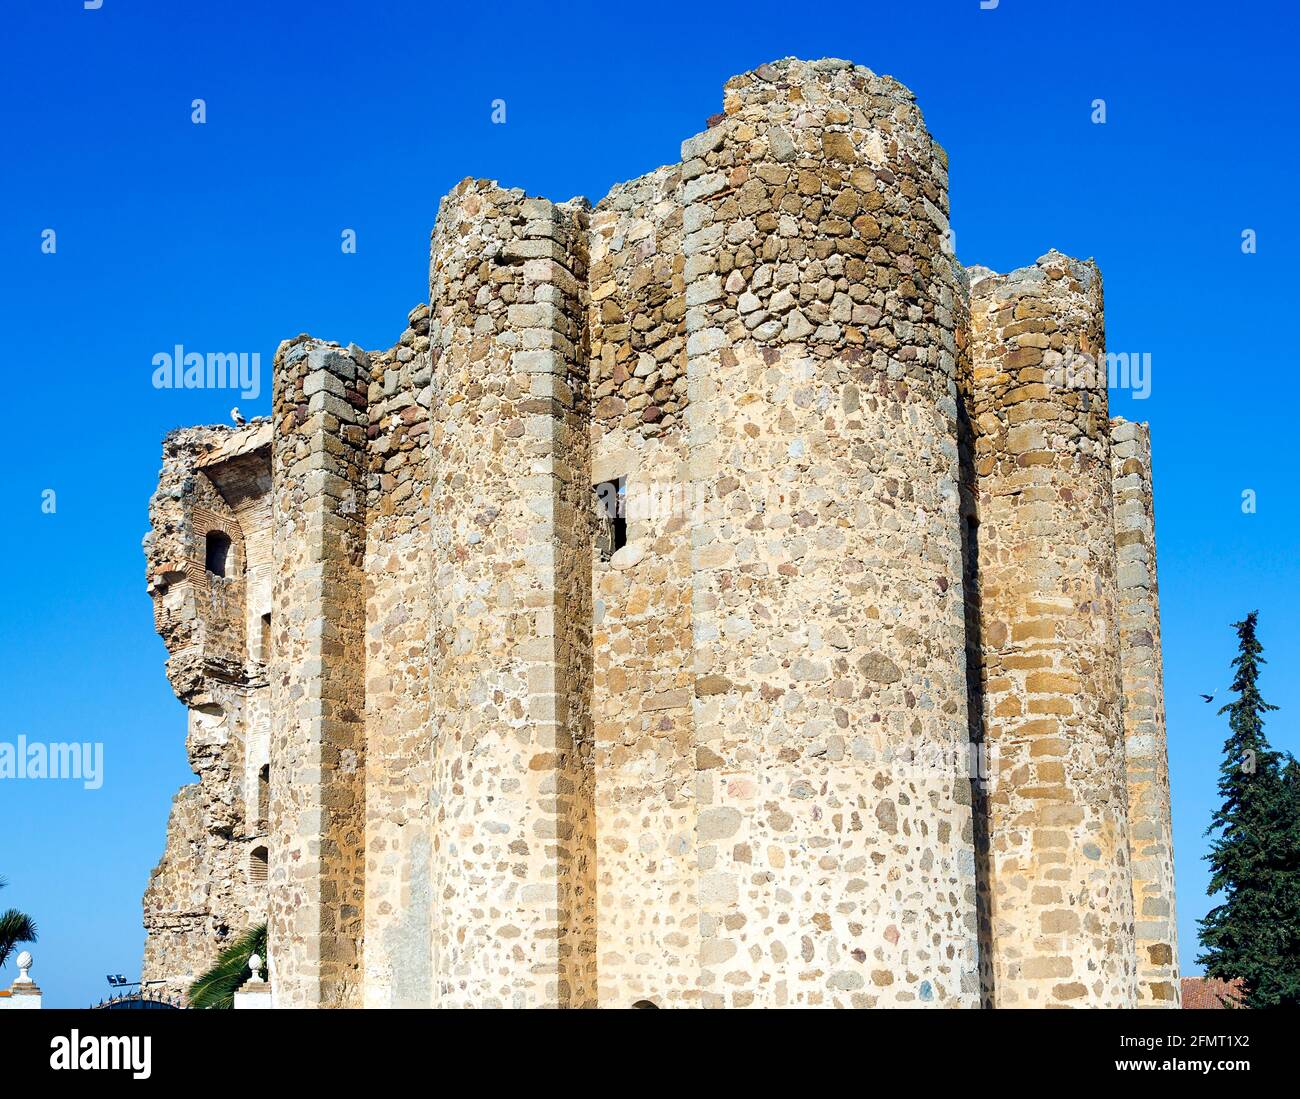 Forteresse du château de Polan construite autour du XIIe siècle à des fins défensives, population espagnole de la province de Tolède, en Castilla-la Mancha. Banque D'Images